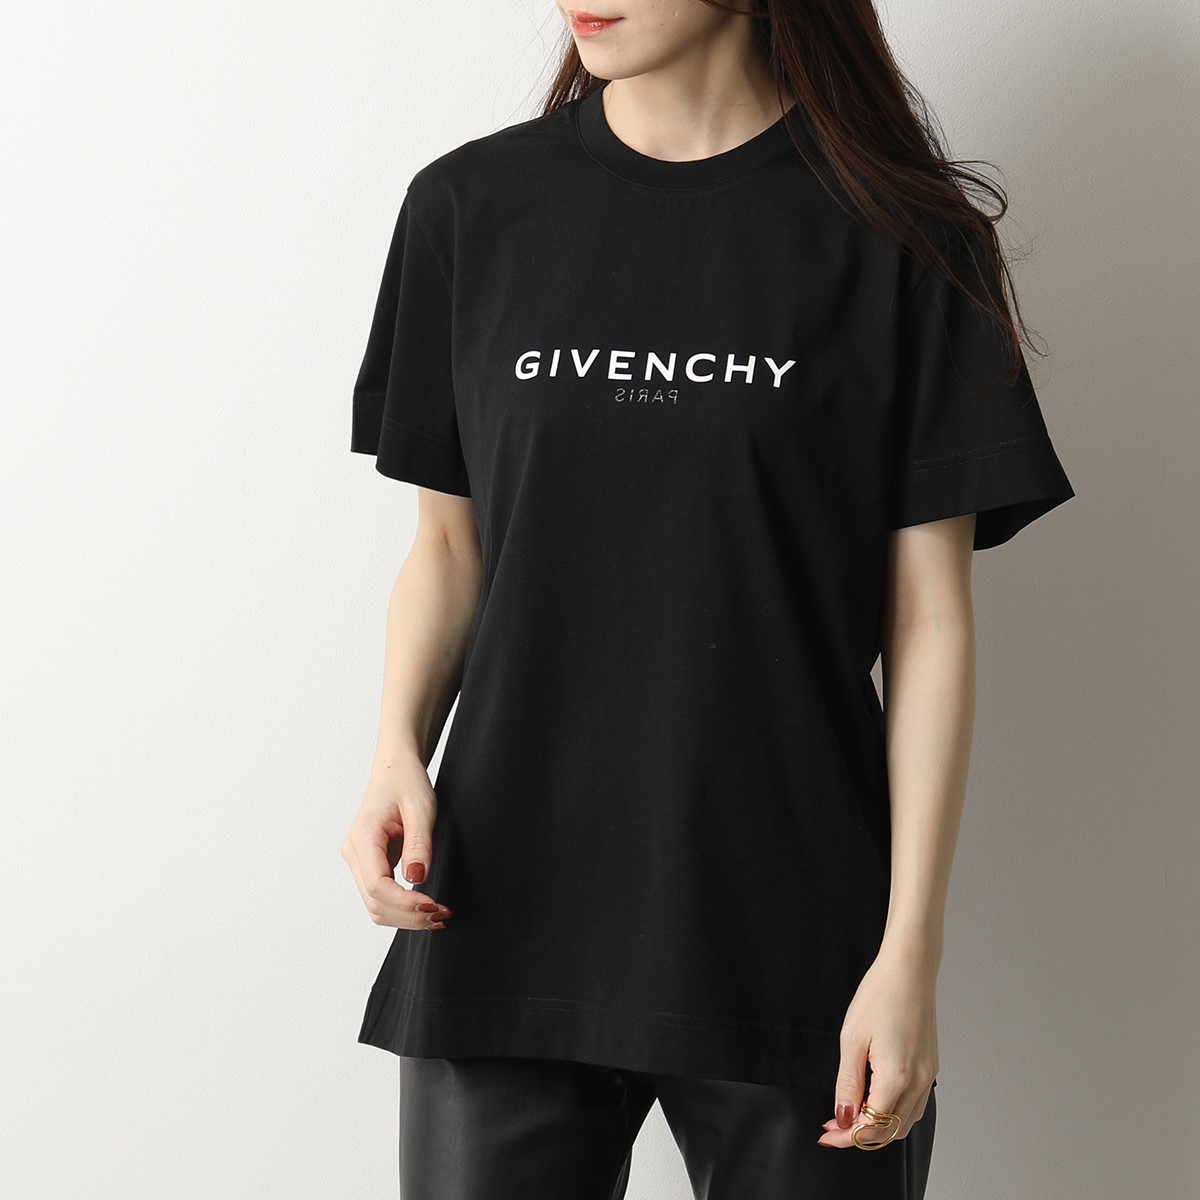 www.yucatreks.com - 9600円 ジバンシーGIVENCHYの半袖Tシャツ Tシャツ ...